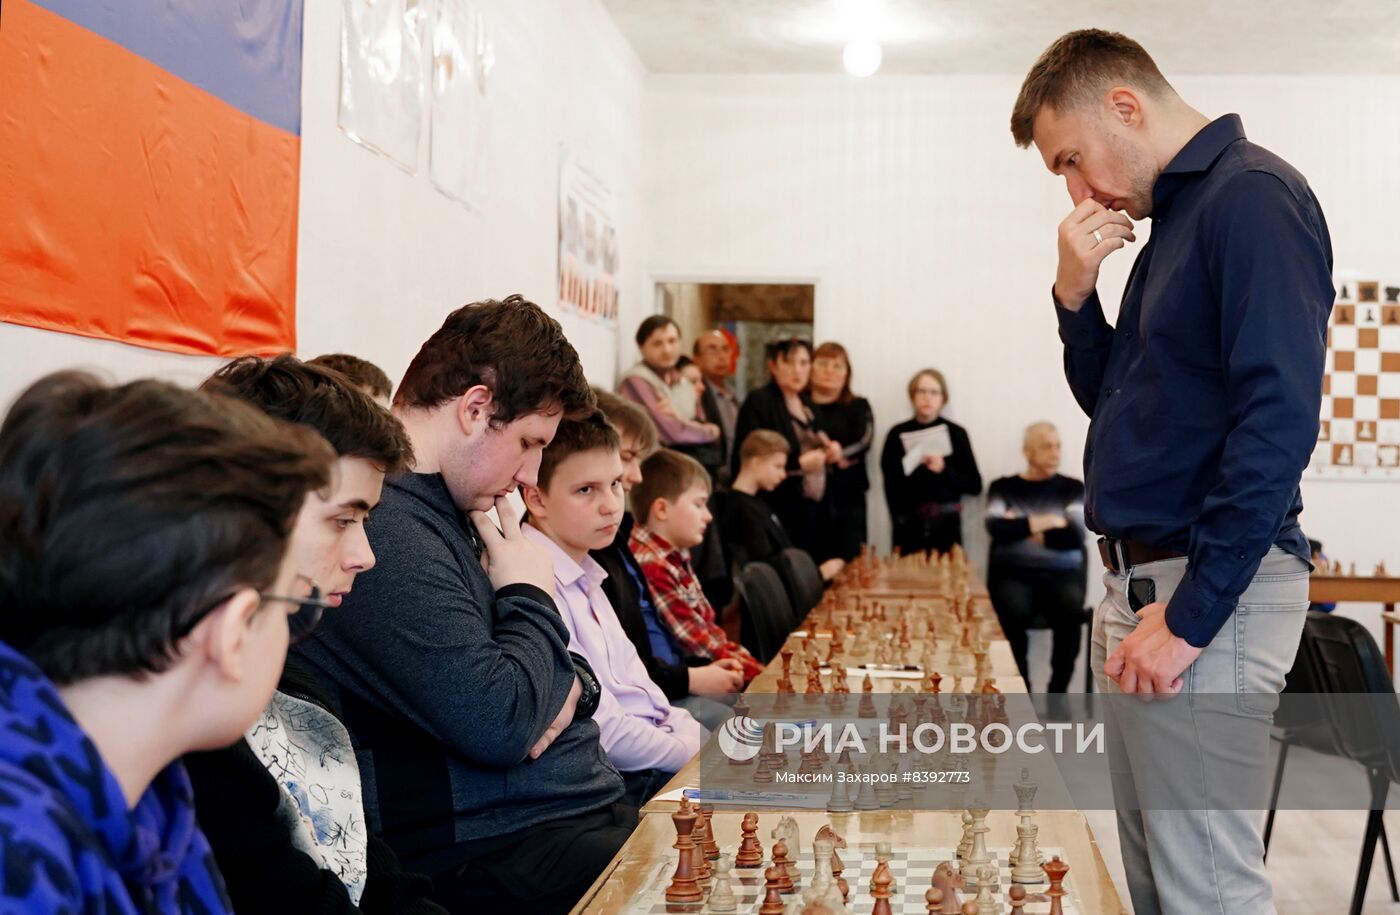 Гроссмейстер С. Карякин провел игру в шахматы с воспитанниками ДЮСШ №4 в Луганске